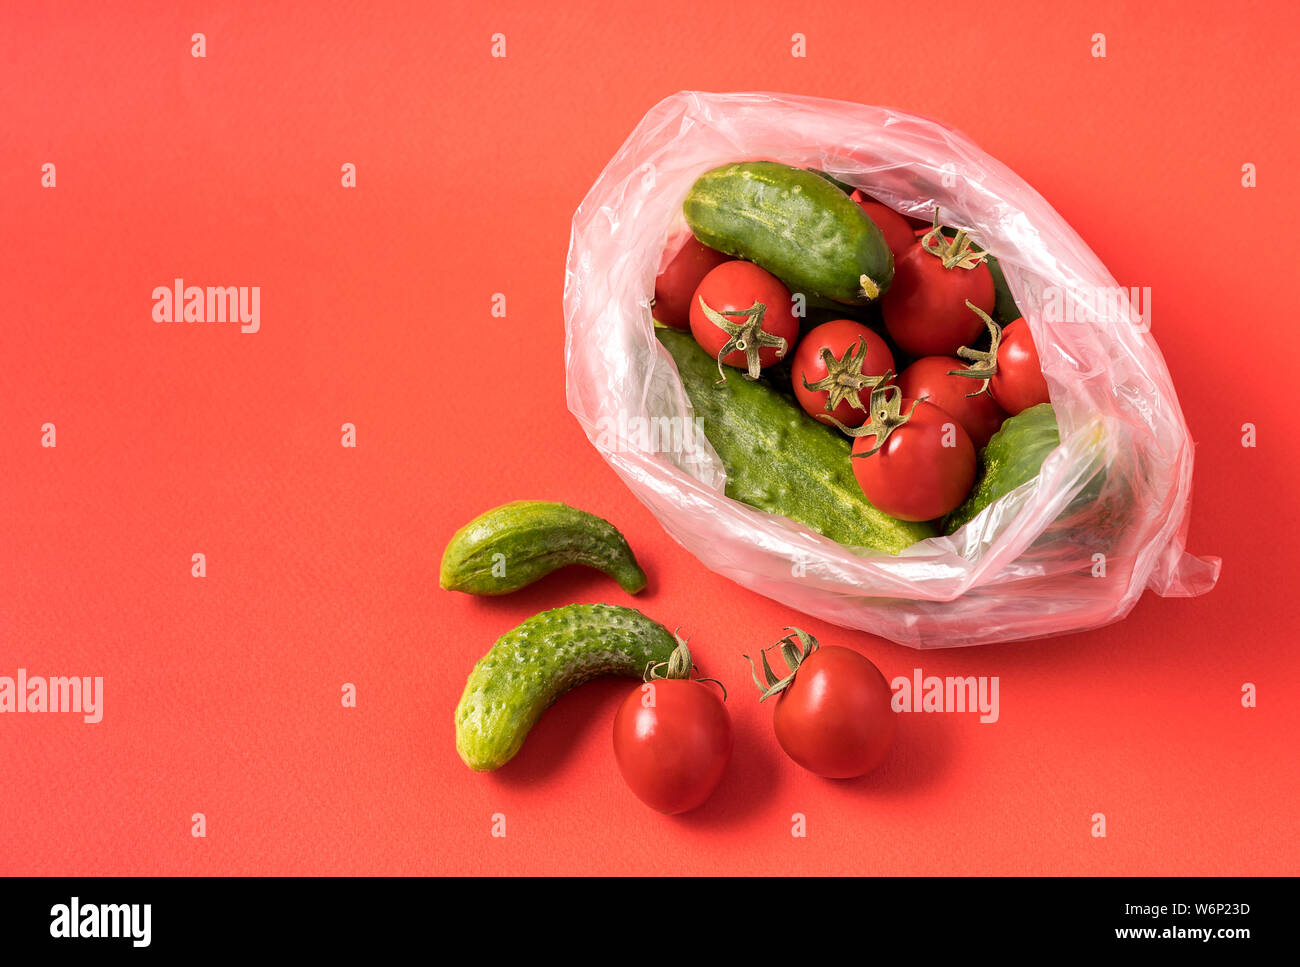 Vue de face des concombres et des tomates dans un sac plastique sur fond rouge. Image montre le harmness à l'aide de sacs de stockage de l'alimentation artificielle. Banque D'Images